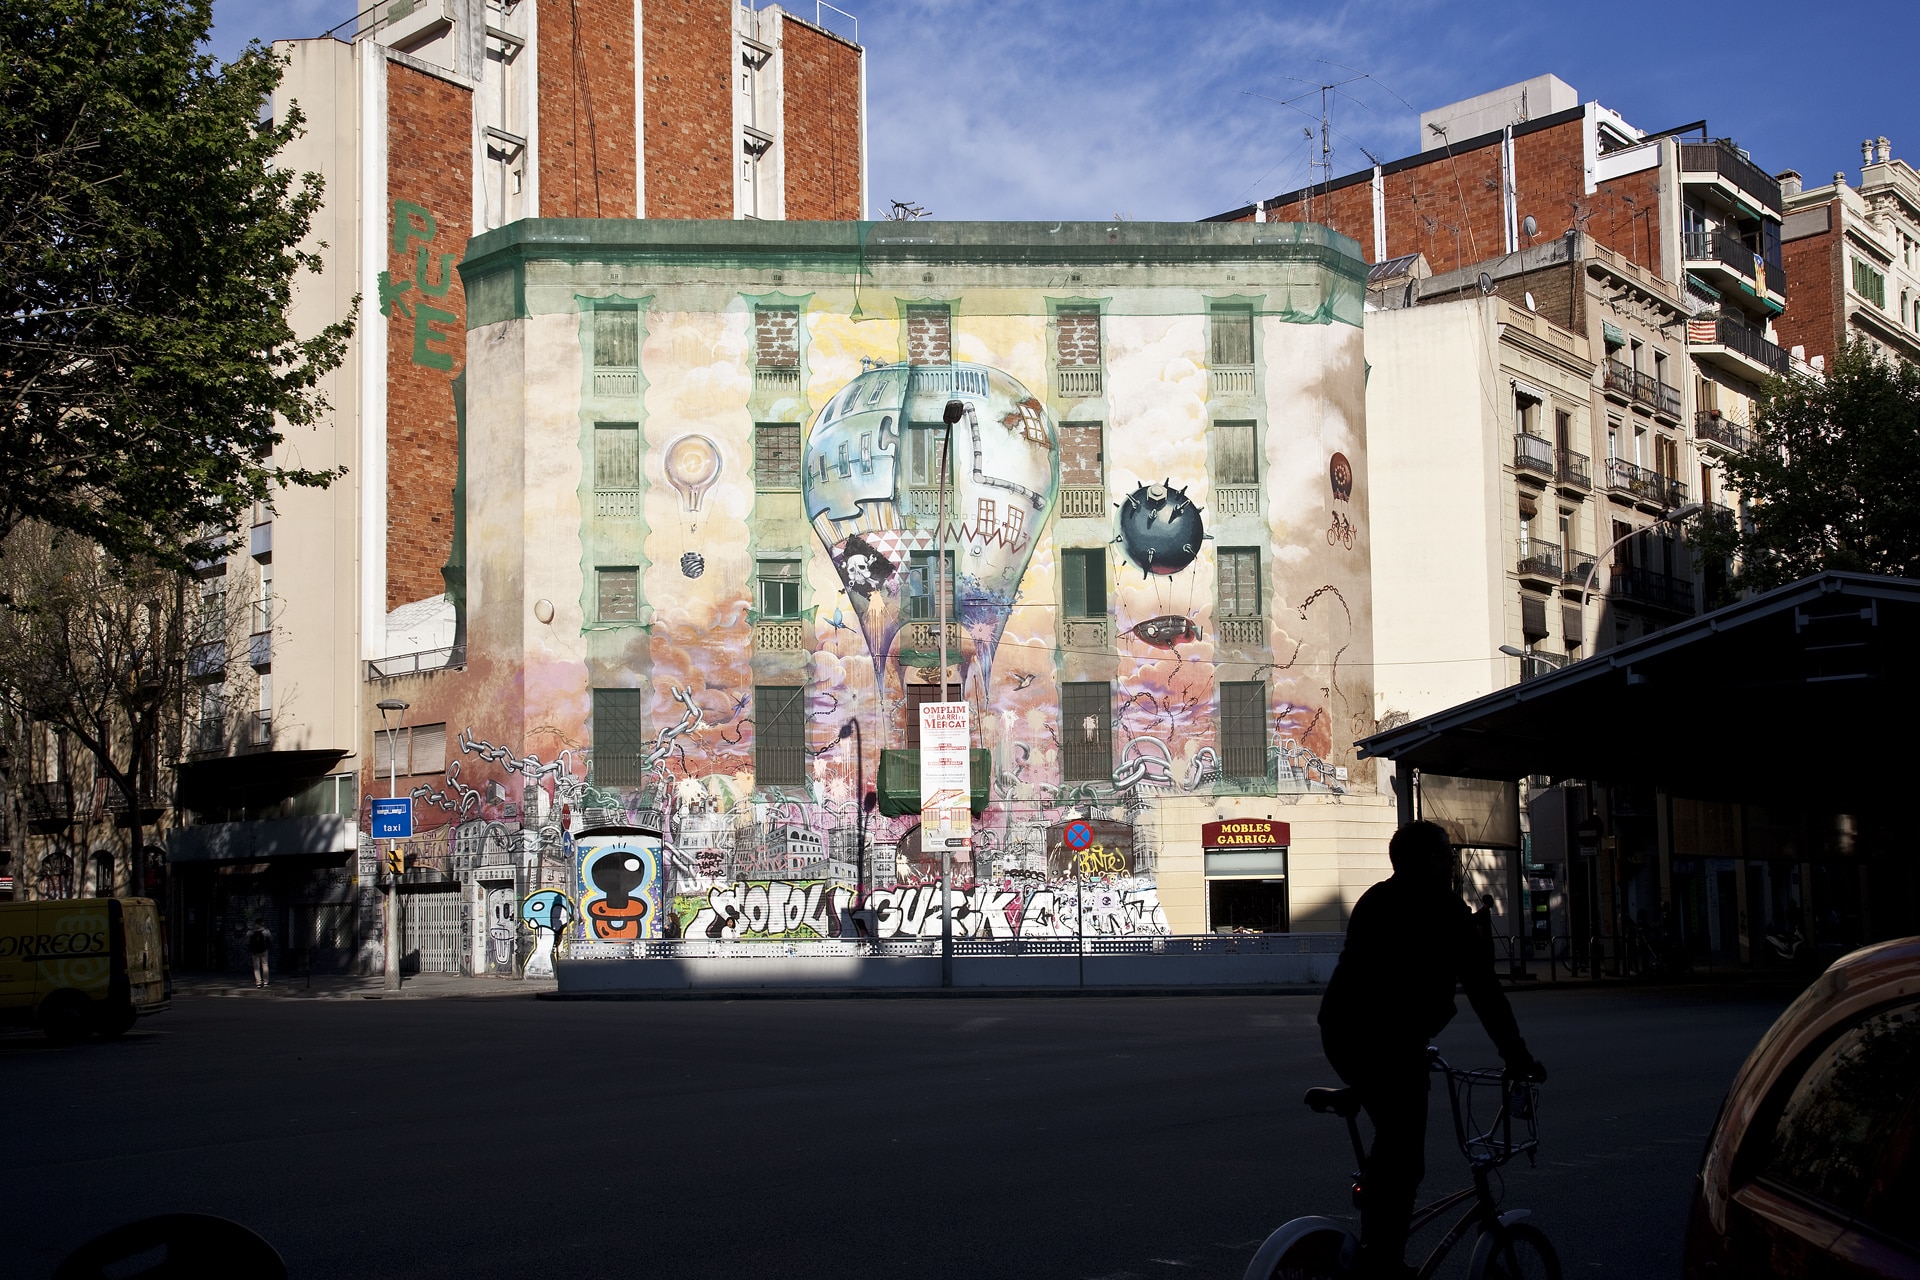 Vor der Renovierung war La Carbonería ein Kulturzentrum mit vielen Graffitis. Bildquelle: ©Simona Rota